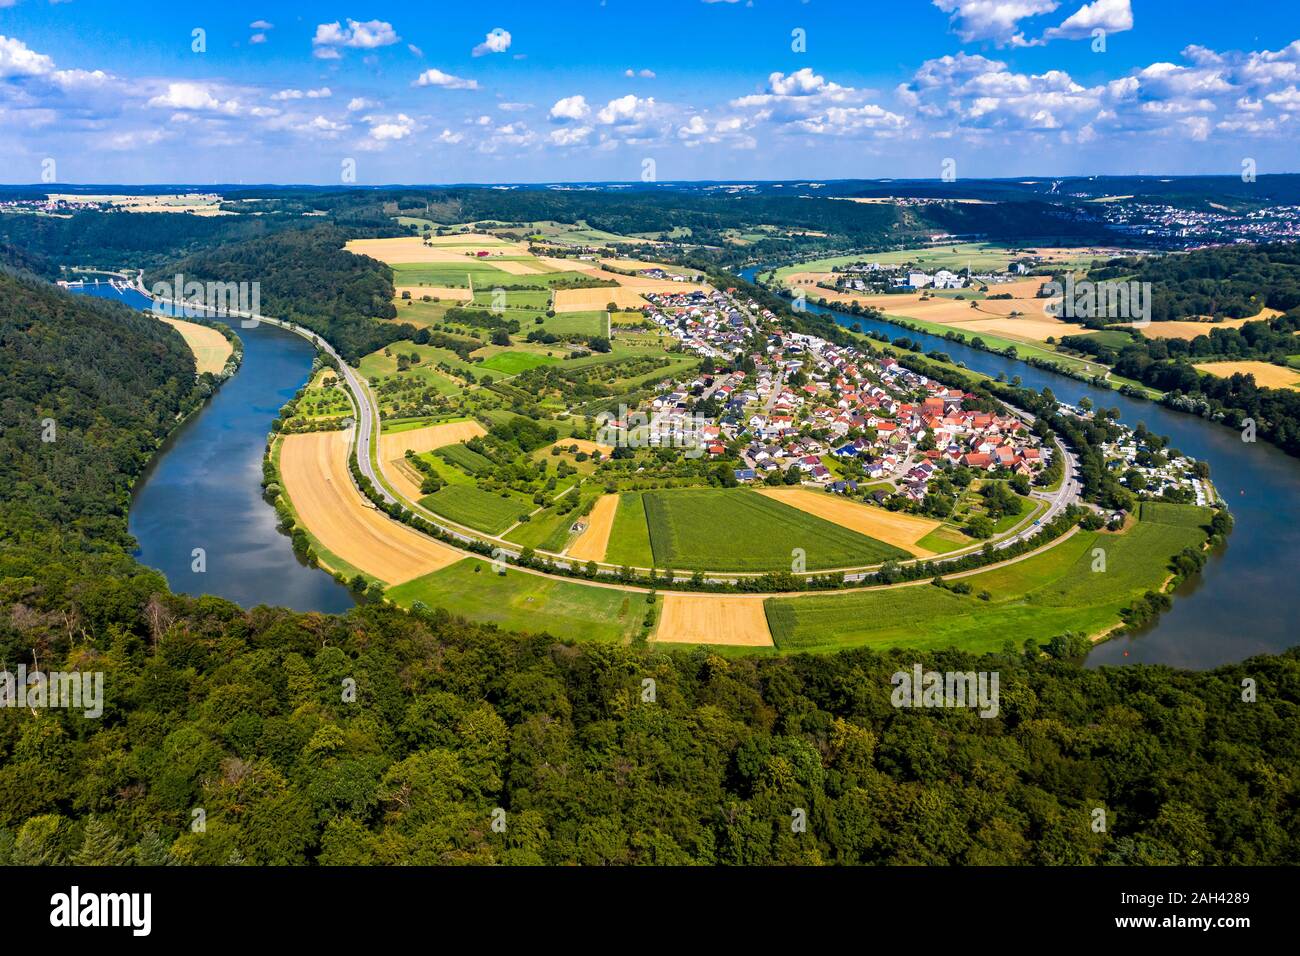 Deutschland, Bayern, Binau, Luftaufnahme von Fluss rund um Land Stadt geschwungene Stockfoto